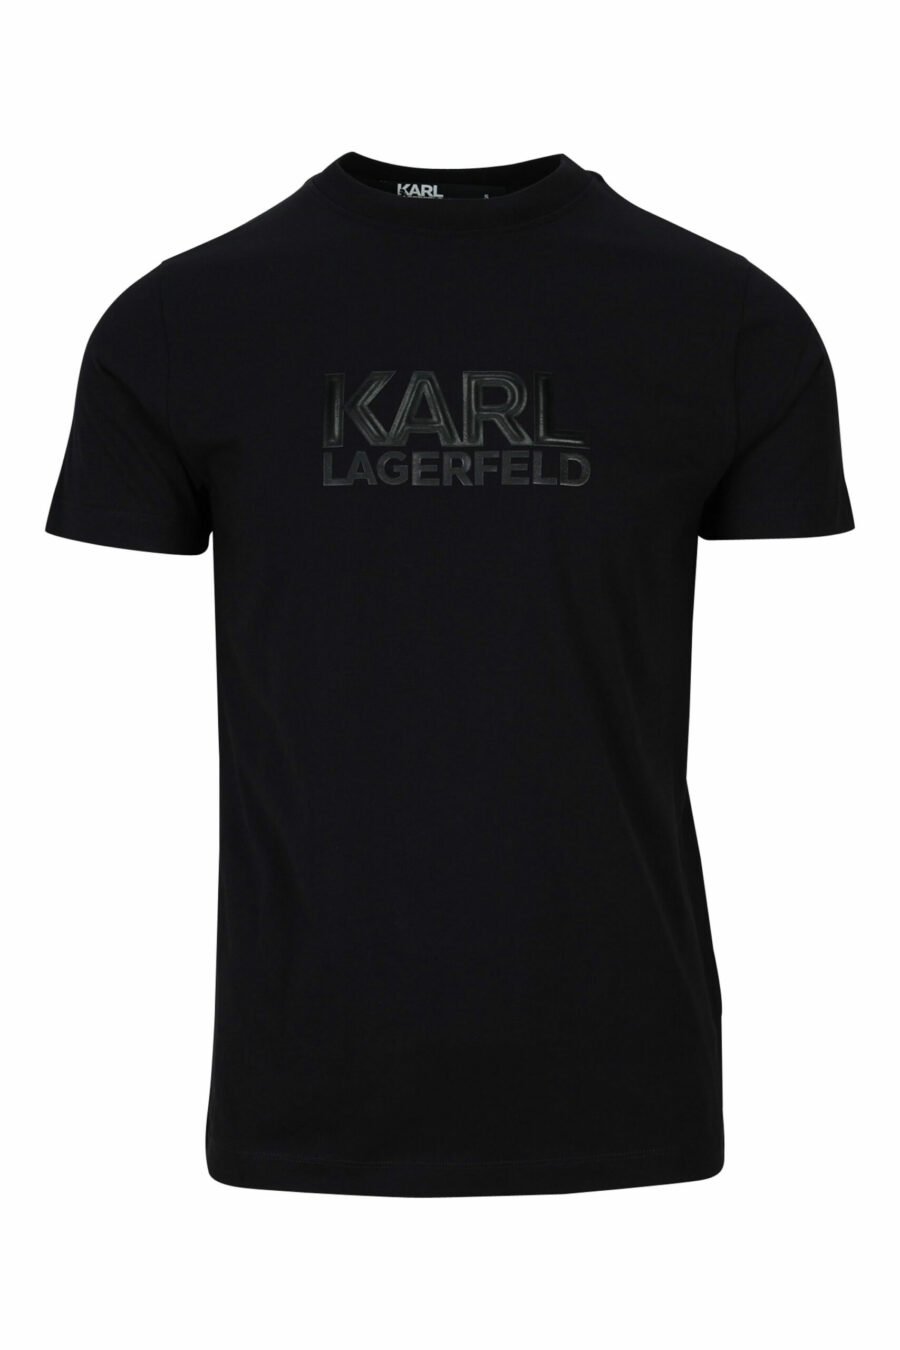 T-shirt noir avec maxilogo en caoutchouc monochrome - 4062226679480 scaled